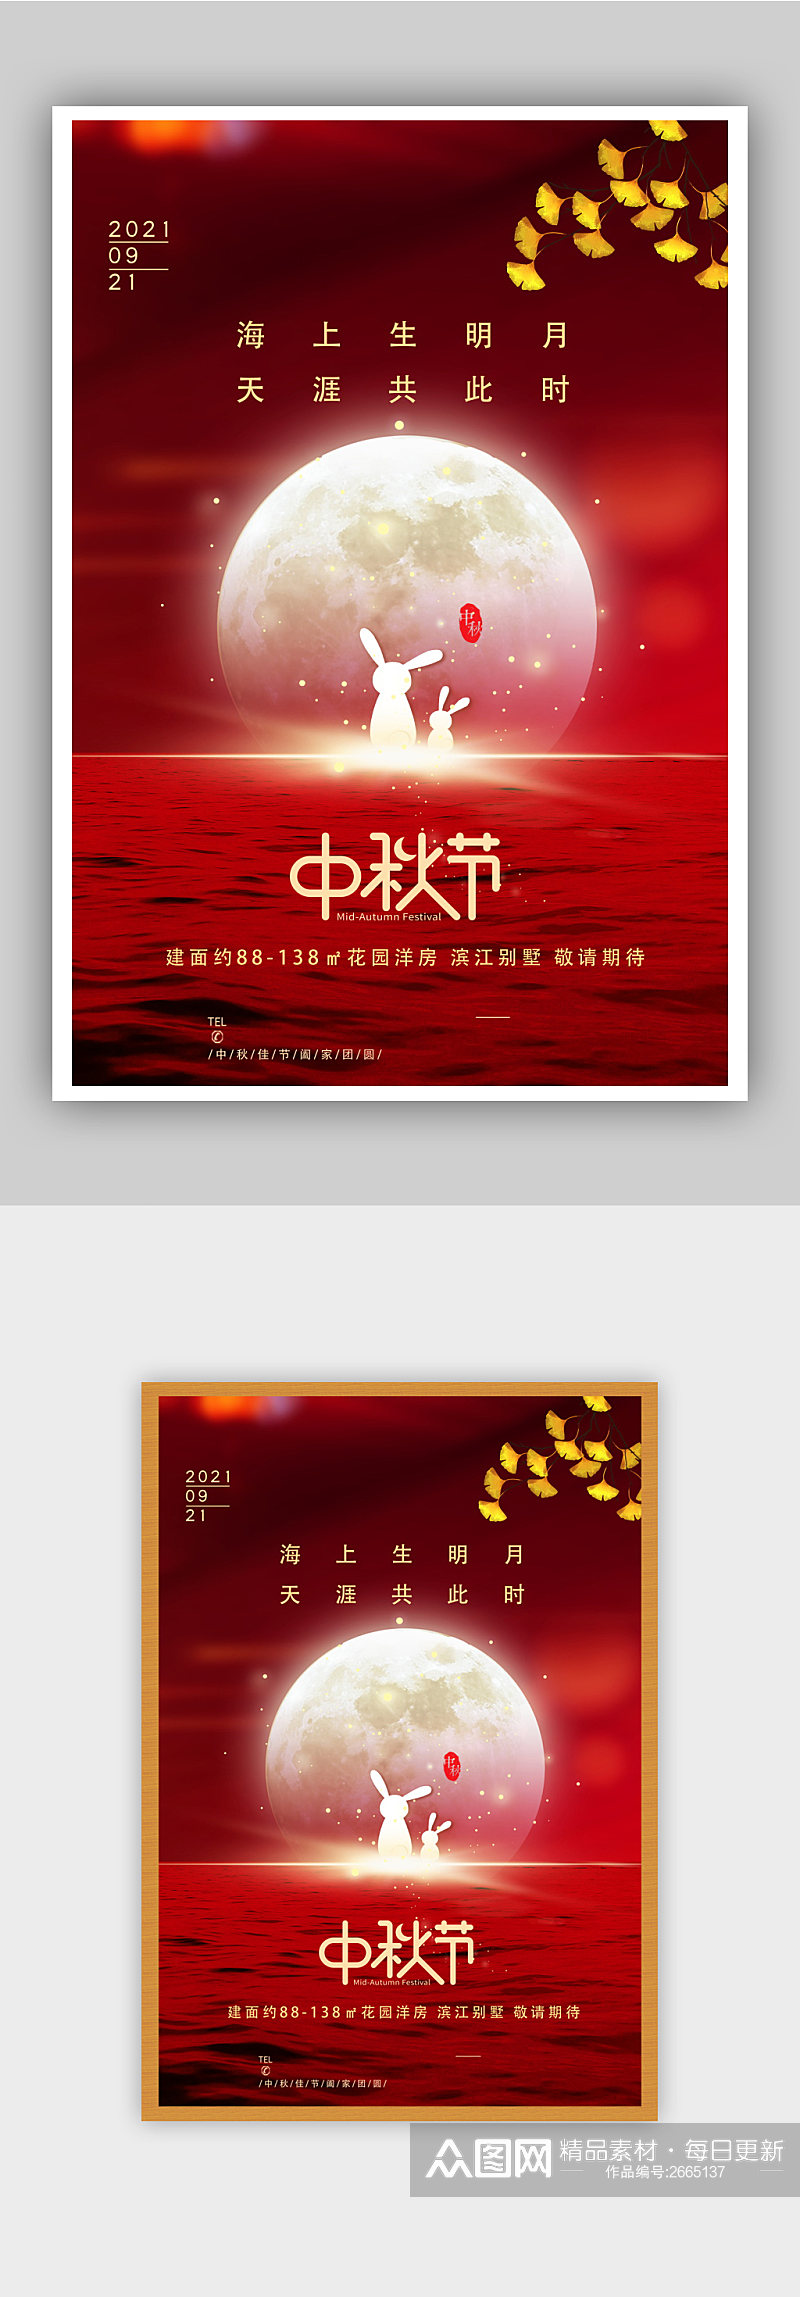 081627红色中秋节节日快乐海报素材